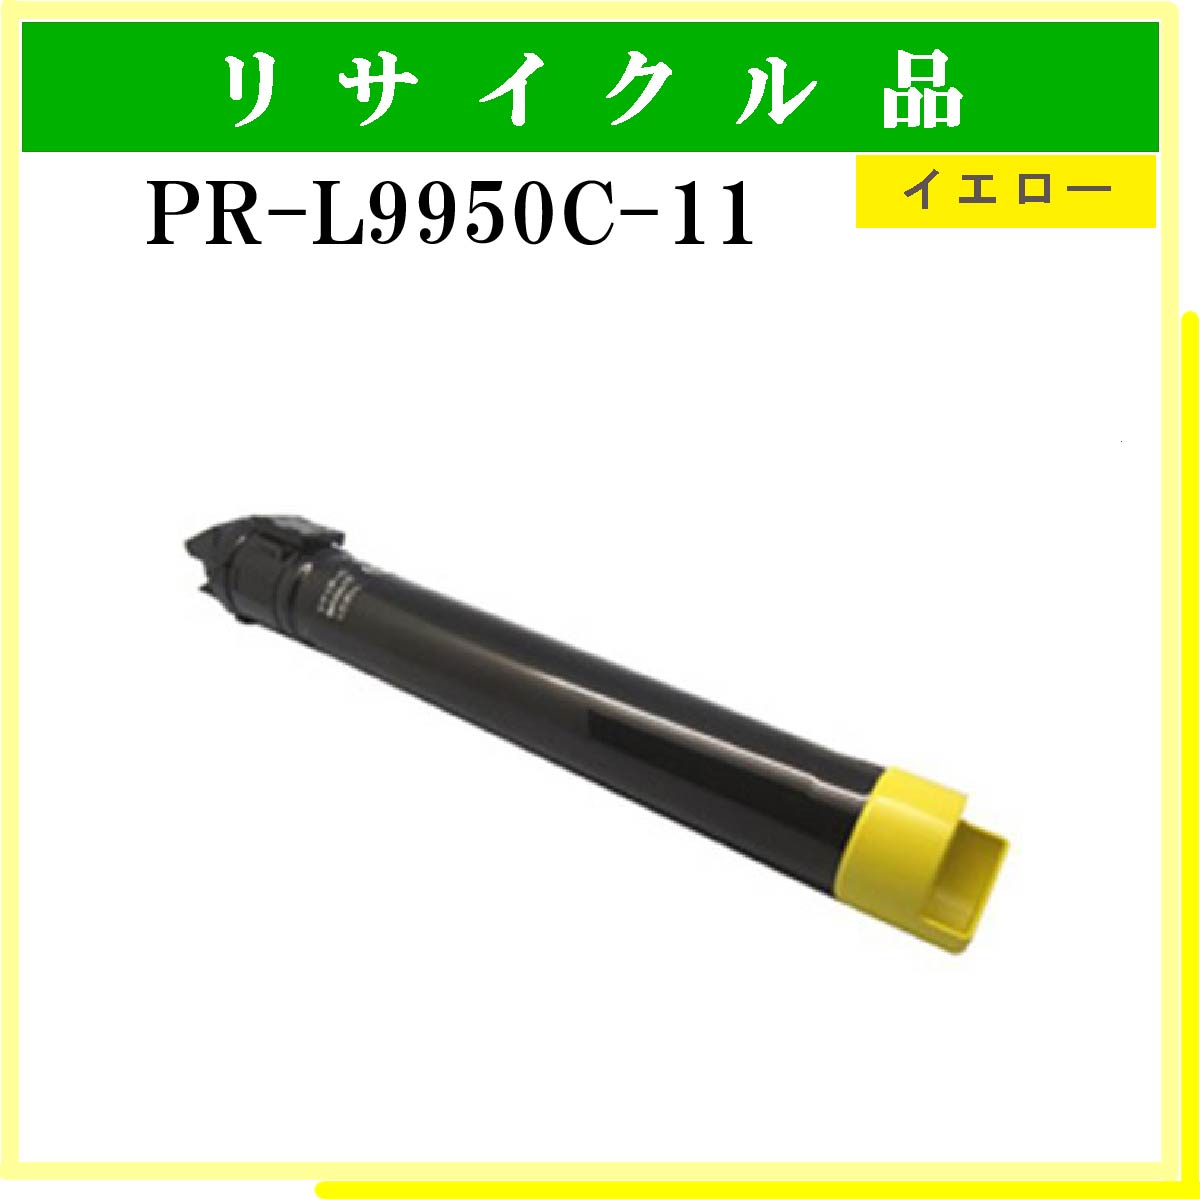 PR-L9950C-11